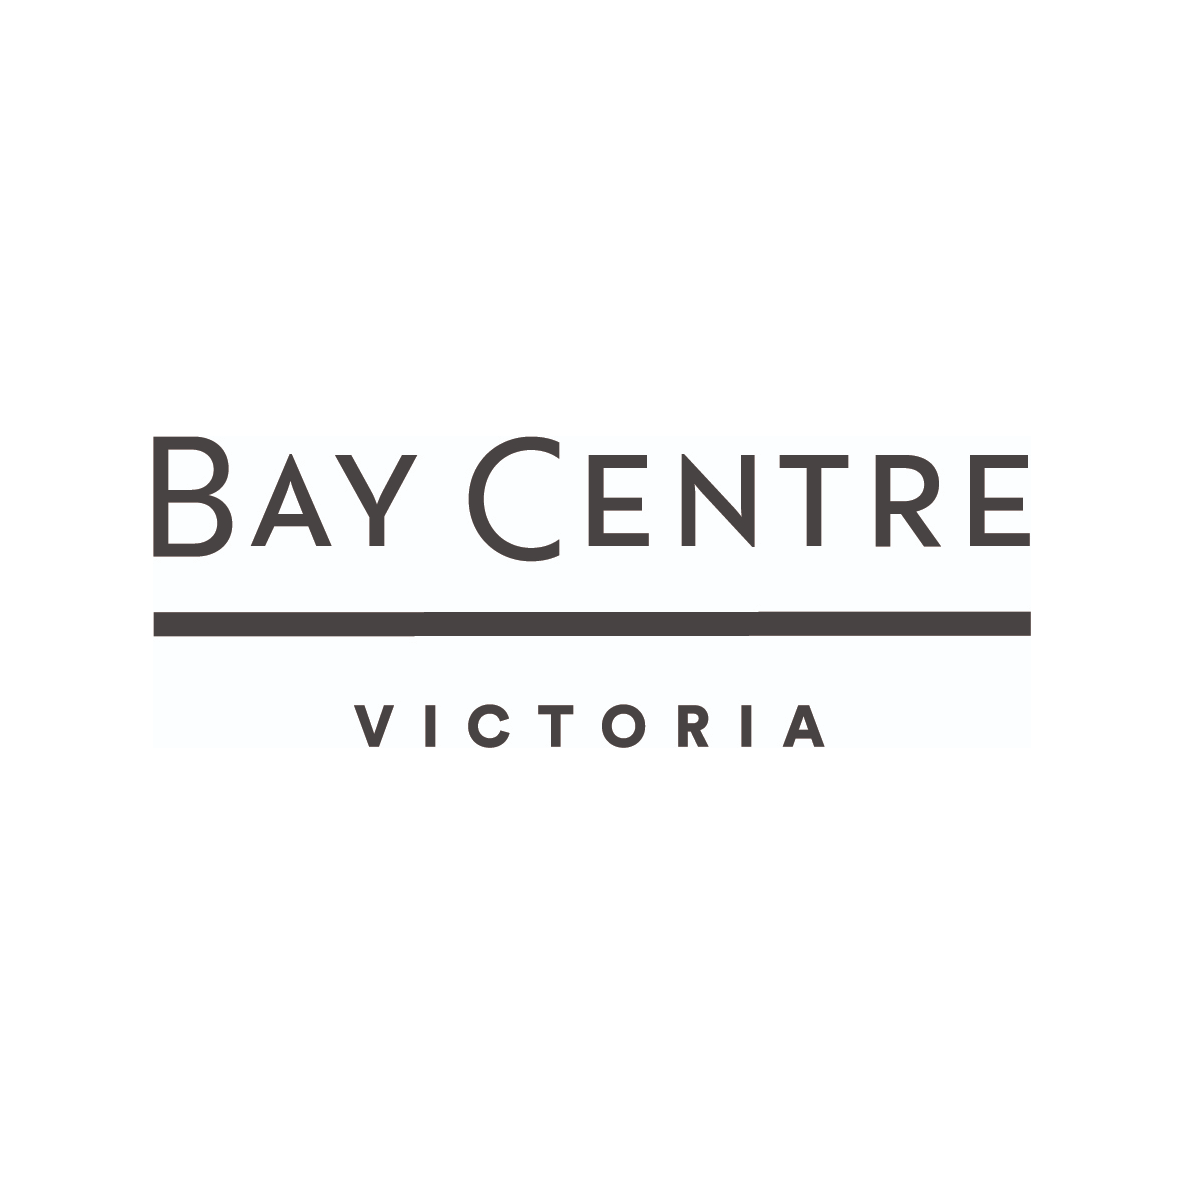 The Bay Centre's logo